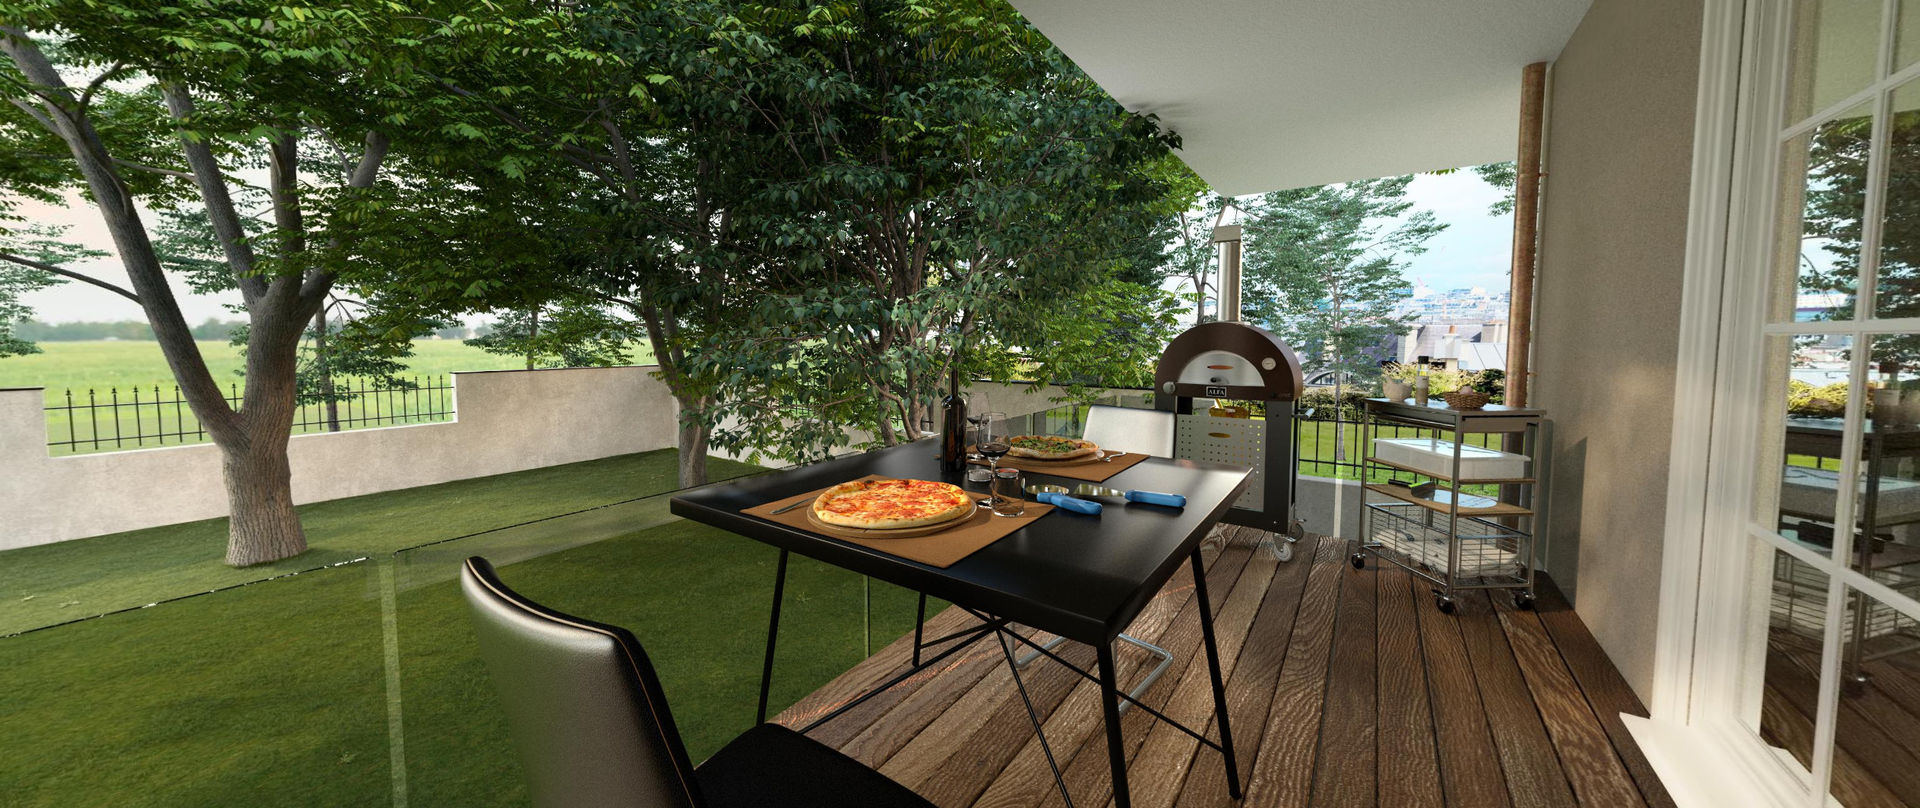 Balkongestaltung mit einem Holzofen Alfa Forni Vorgarten Wohnraumerweiterung, Balkon, Stühlen, Tischen